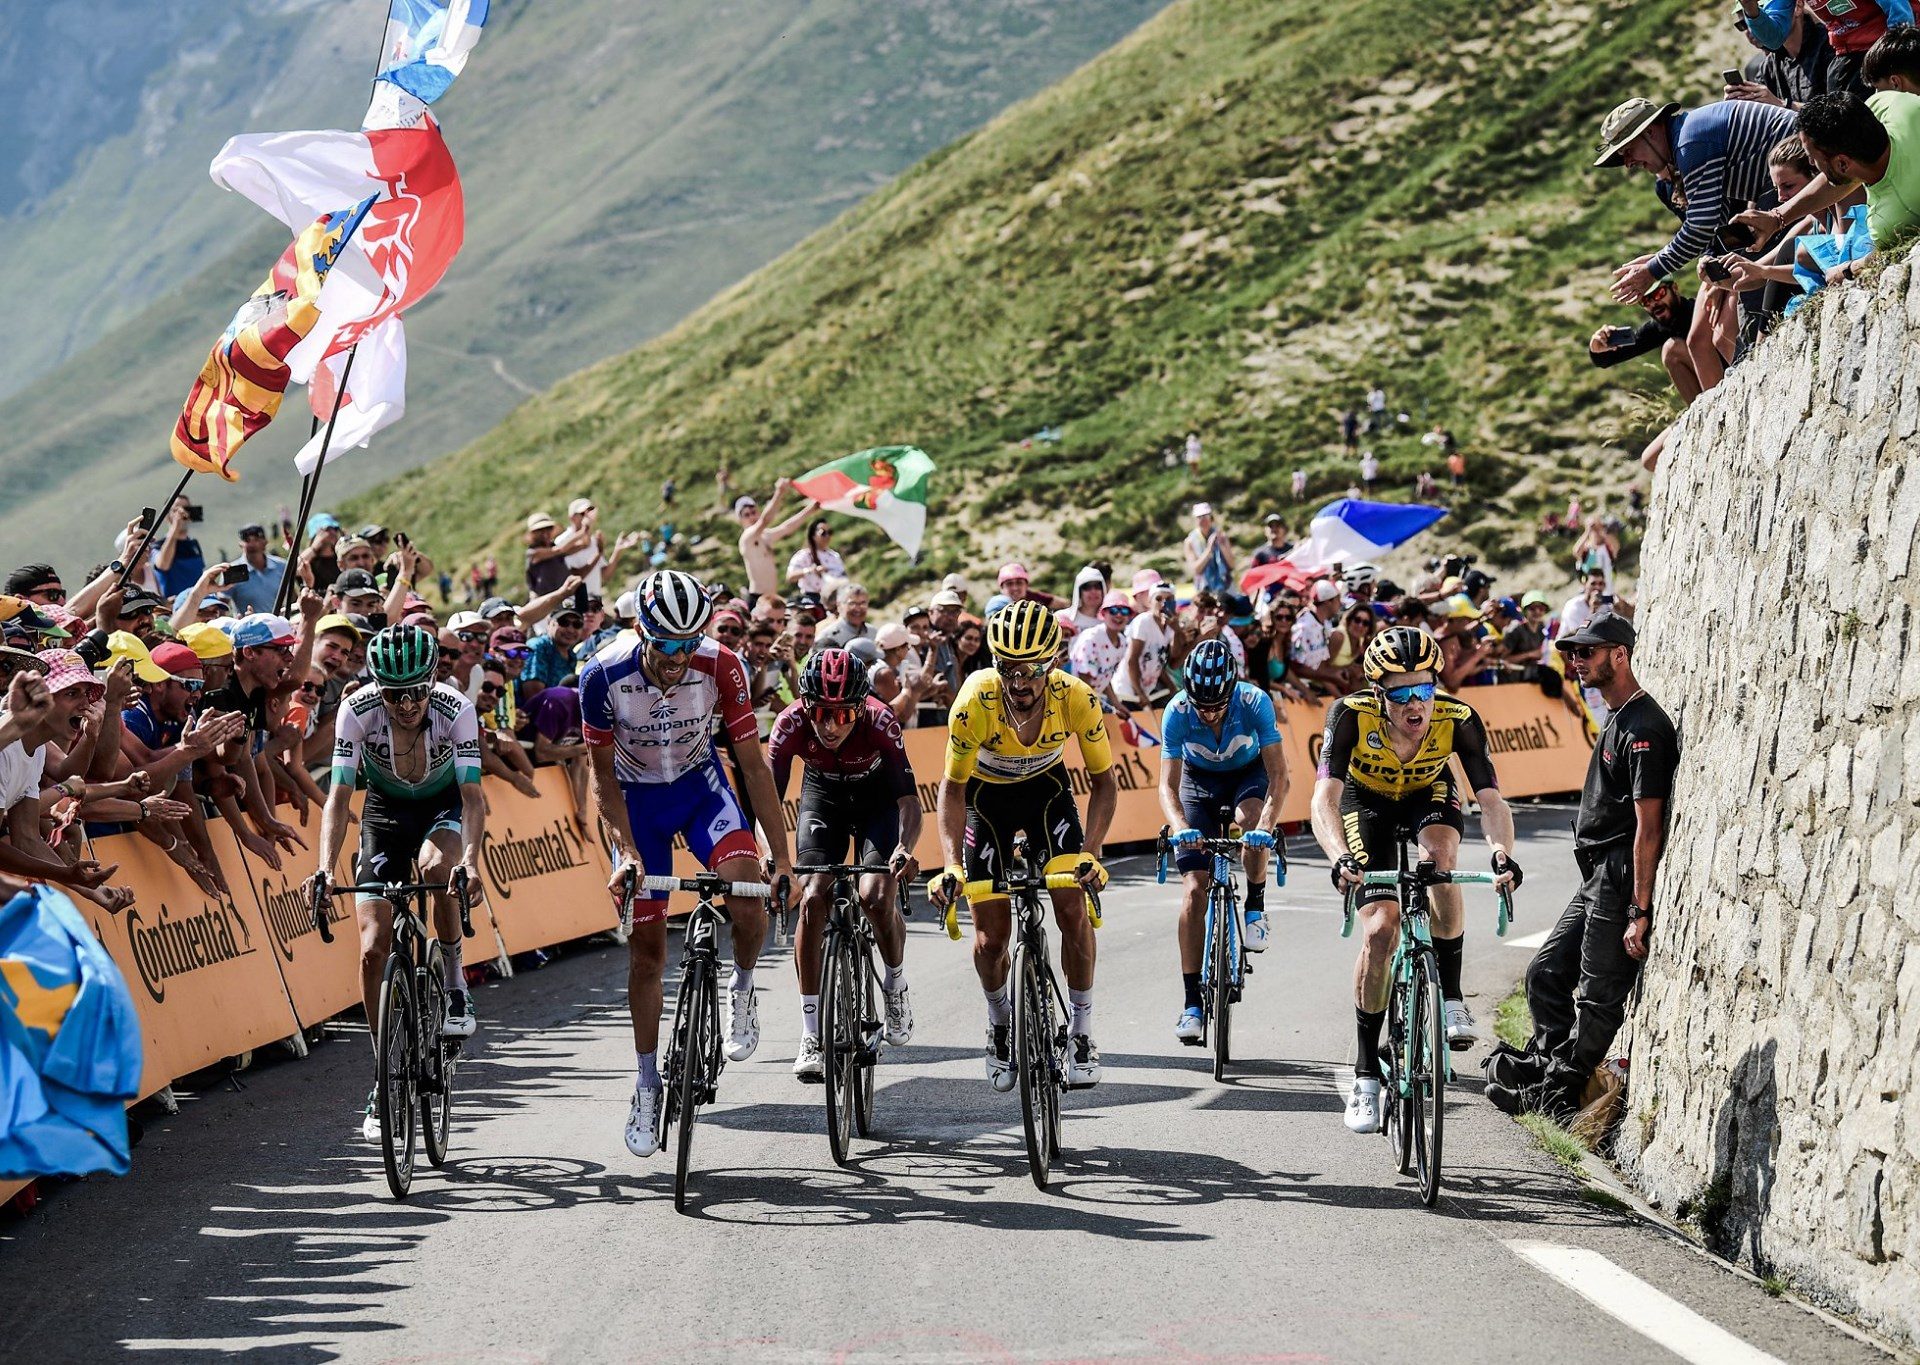 Kdo vyhraje Tour de France? Ve hře je 6 jezdců